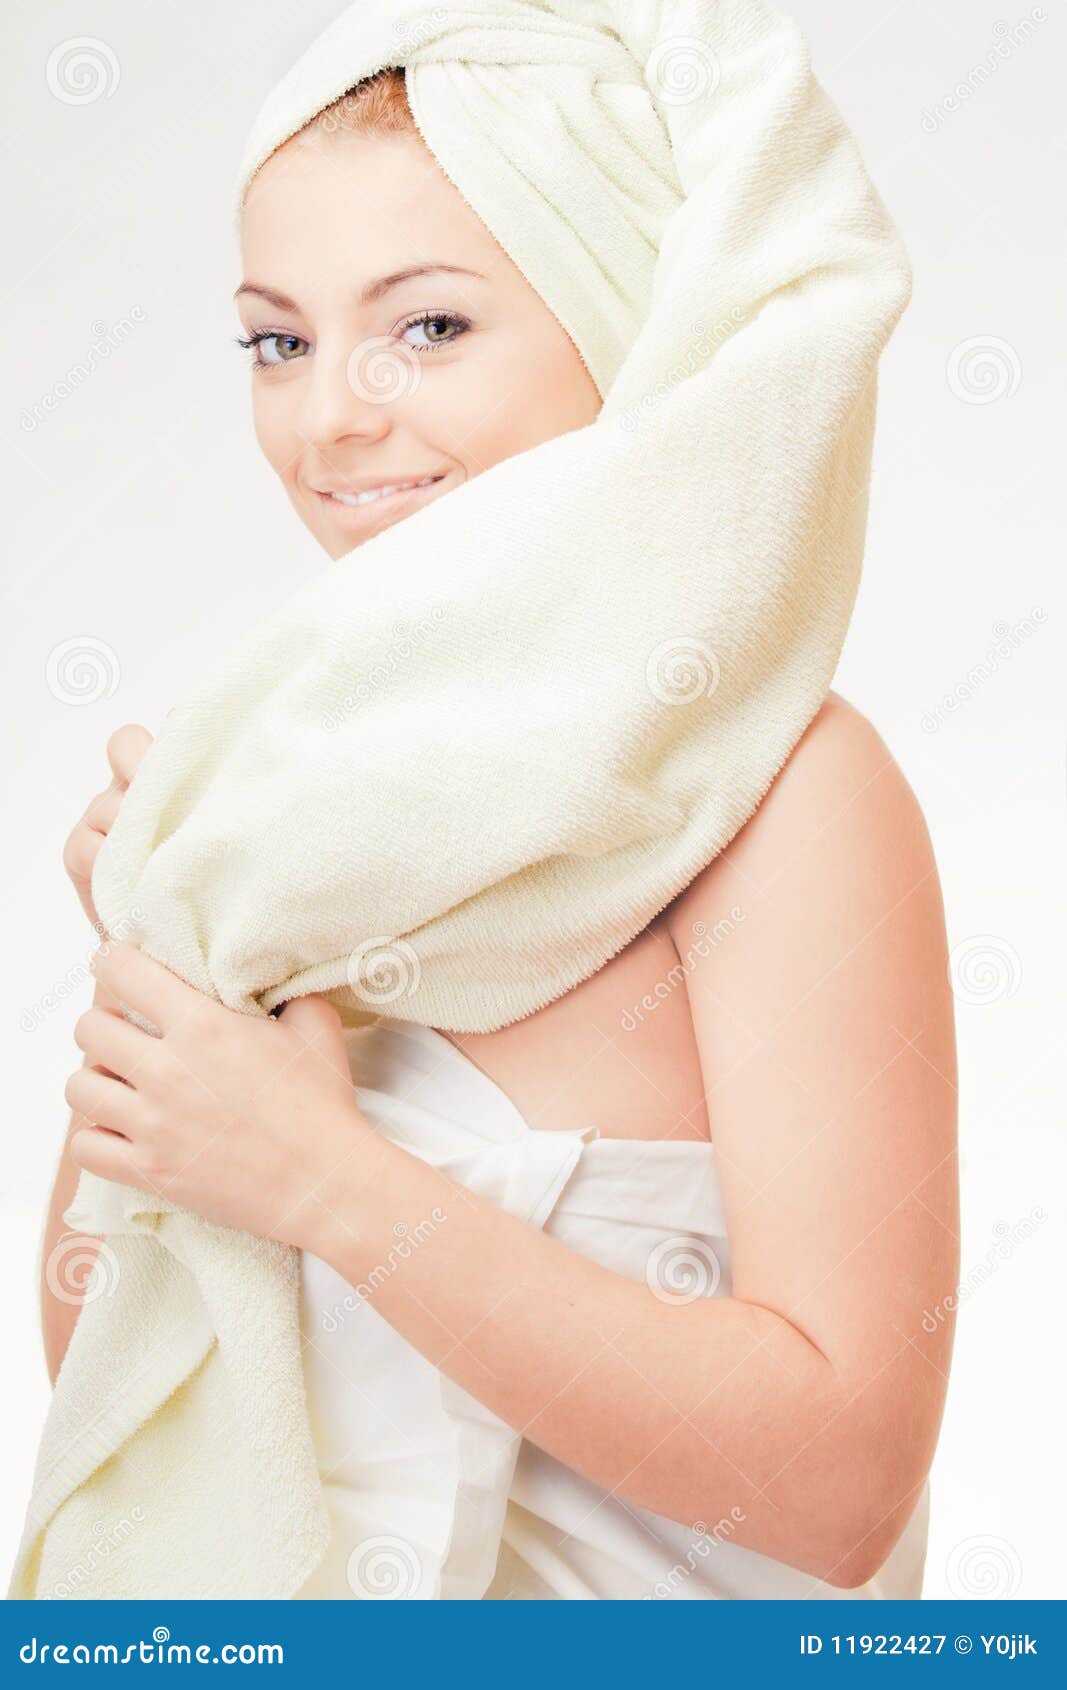 Обернутая полотенцем. Голова замотанная в полотенце. Азиатские девушки обернутые в полотенце. Голова укутана в полотенце. Полотенце завернутое на голове.